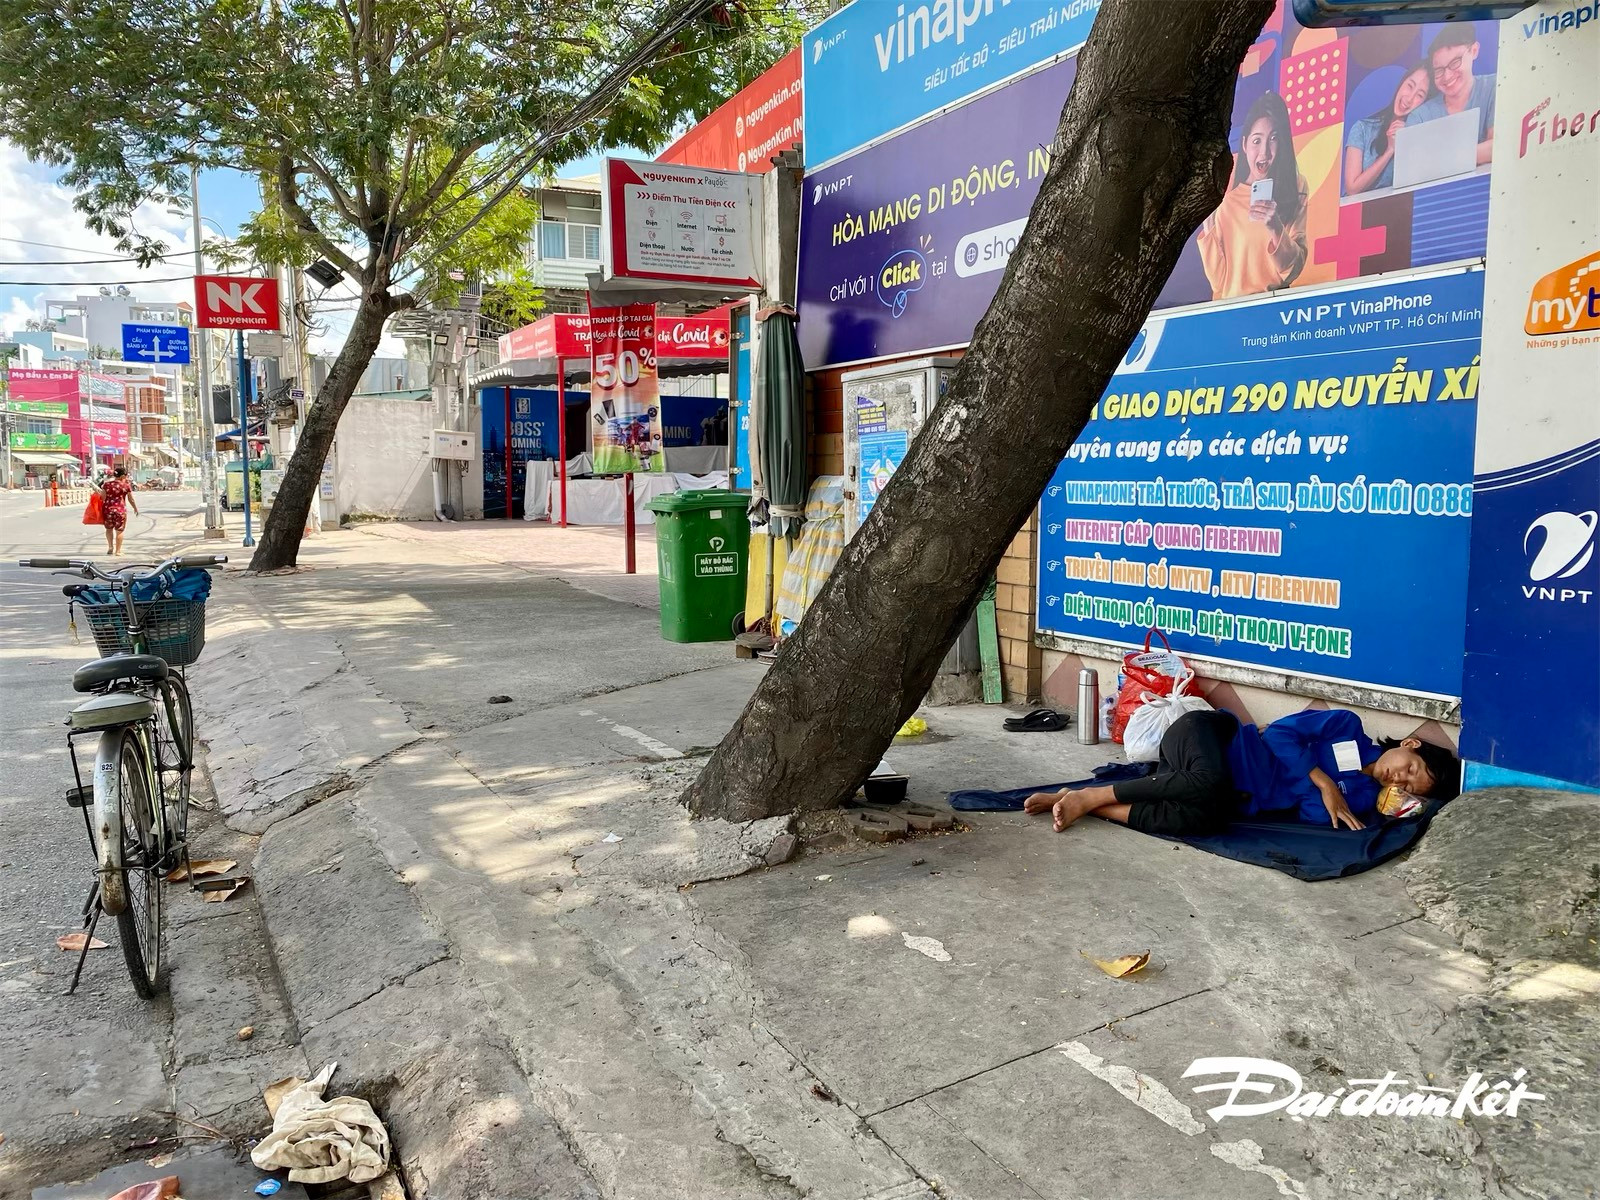 Còn đây là hình ảnh một phụ nữ trẻ tuổi nằm nghỉ ngay bên vỉa hè đường Nguyễn Xí (quận Bình Thạnh), nhìn hình ảnh khiến chúng tôi không khỏi xót xa.